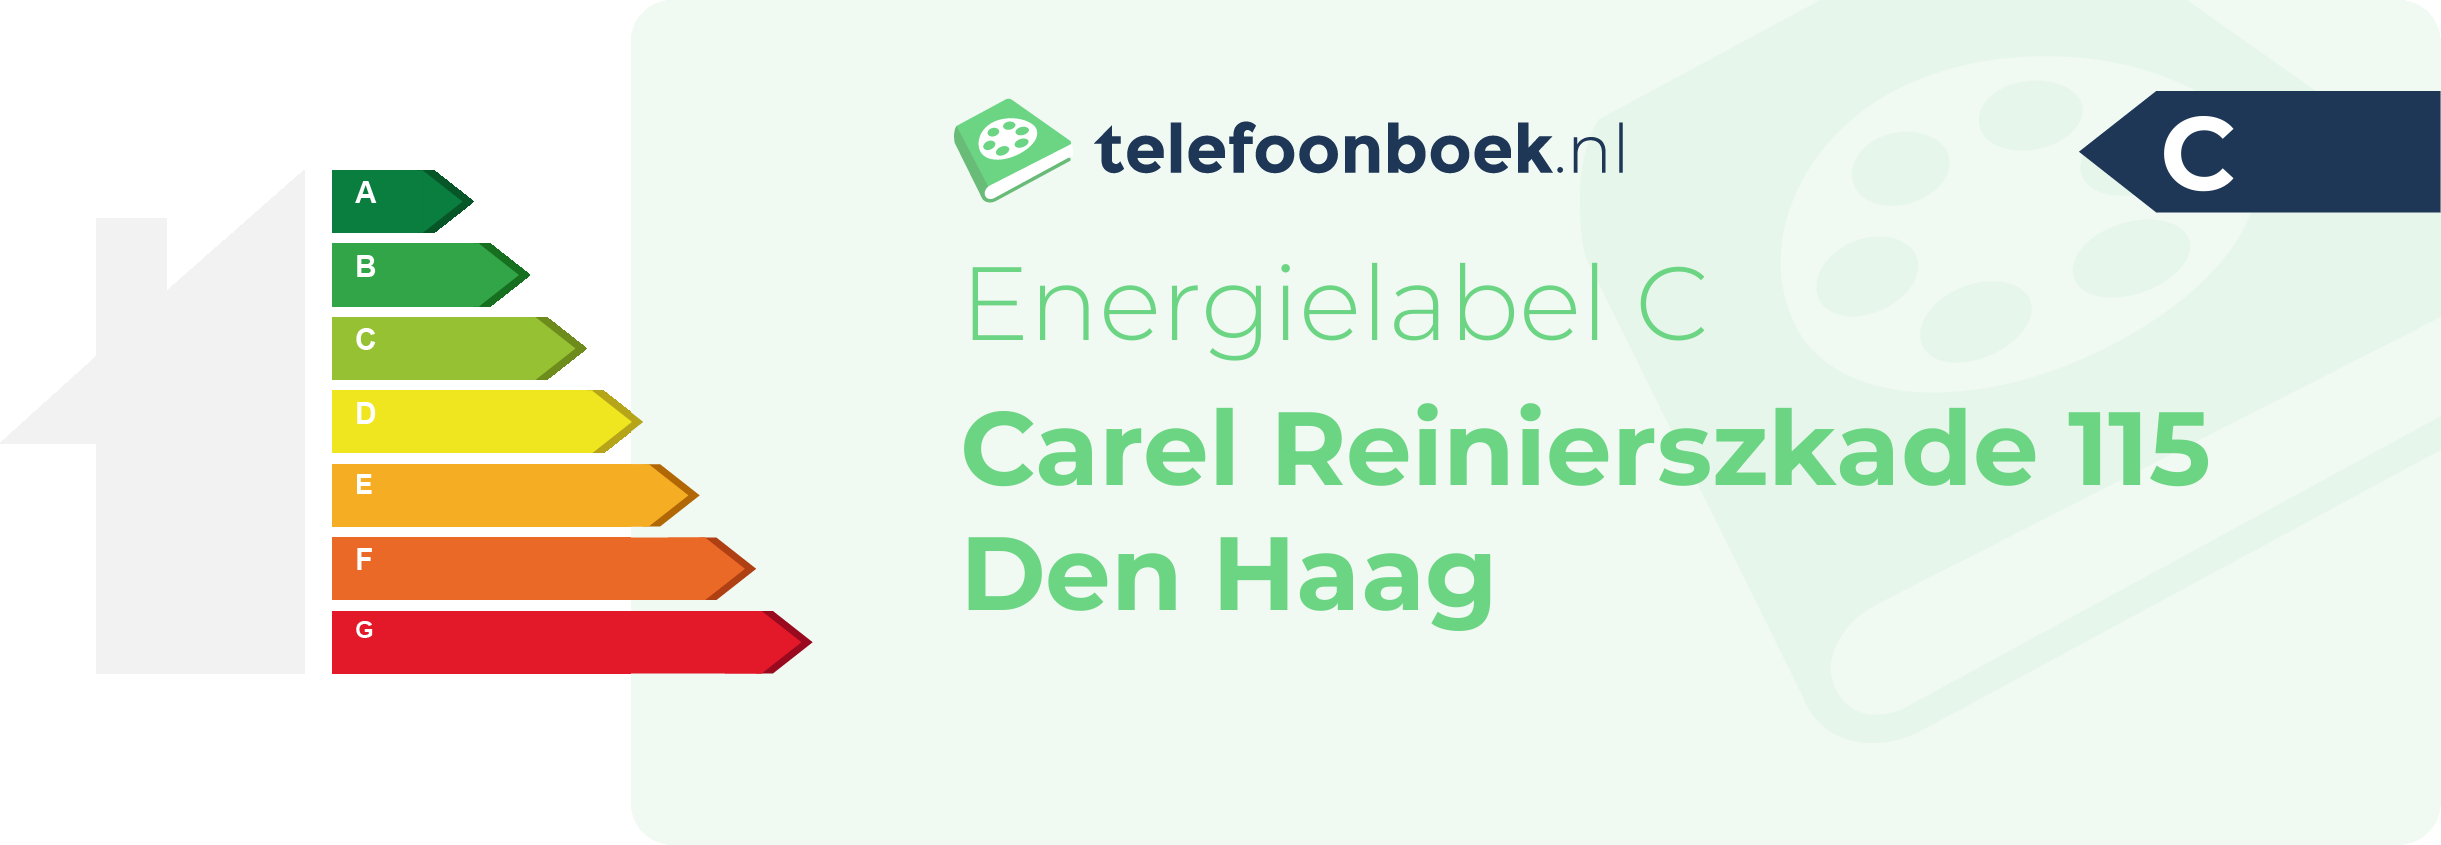 Energielabel Carel Reinierszkade 115 Den Haag